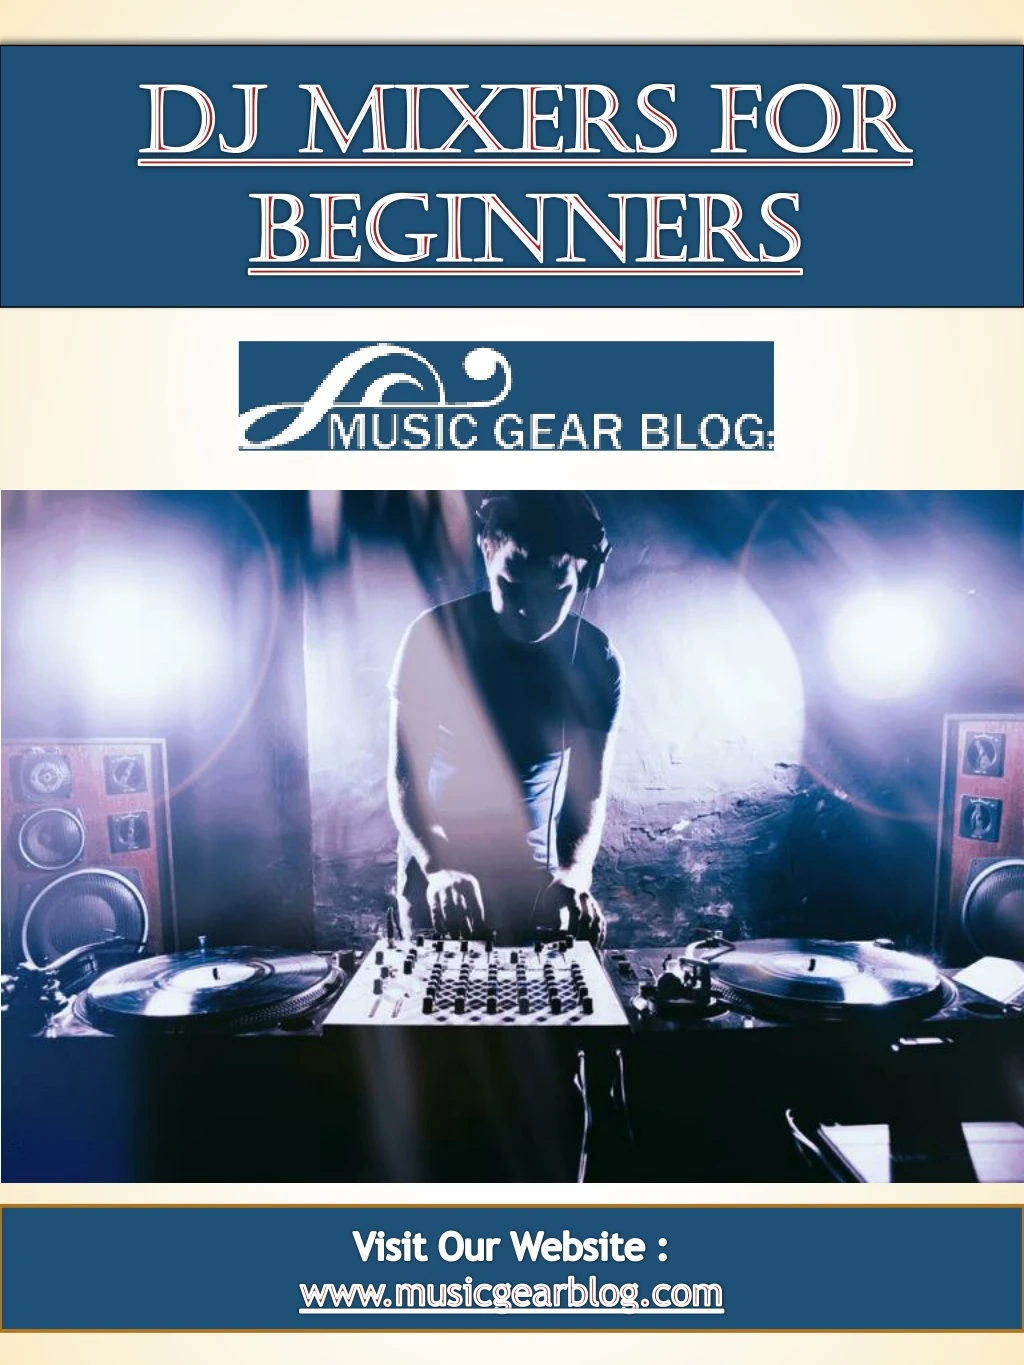 dj mixers for beginners